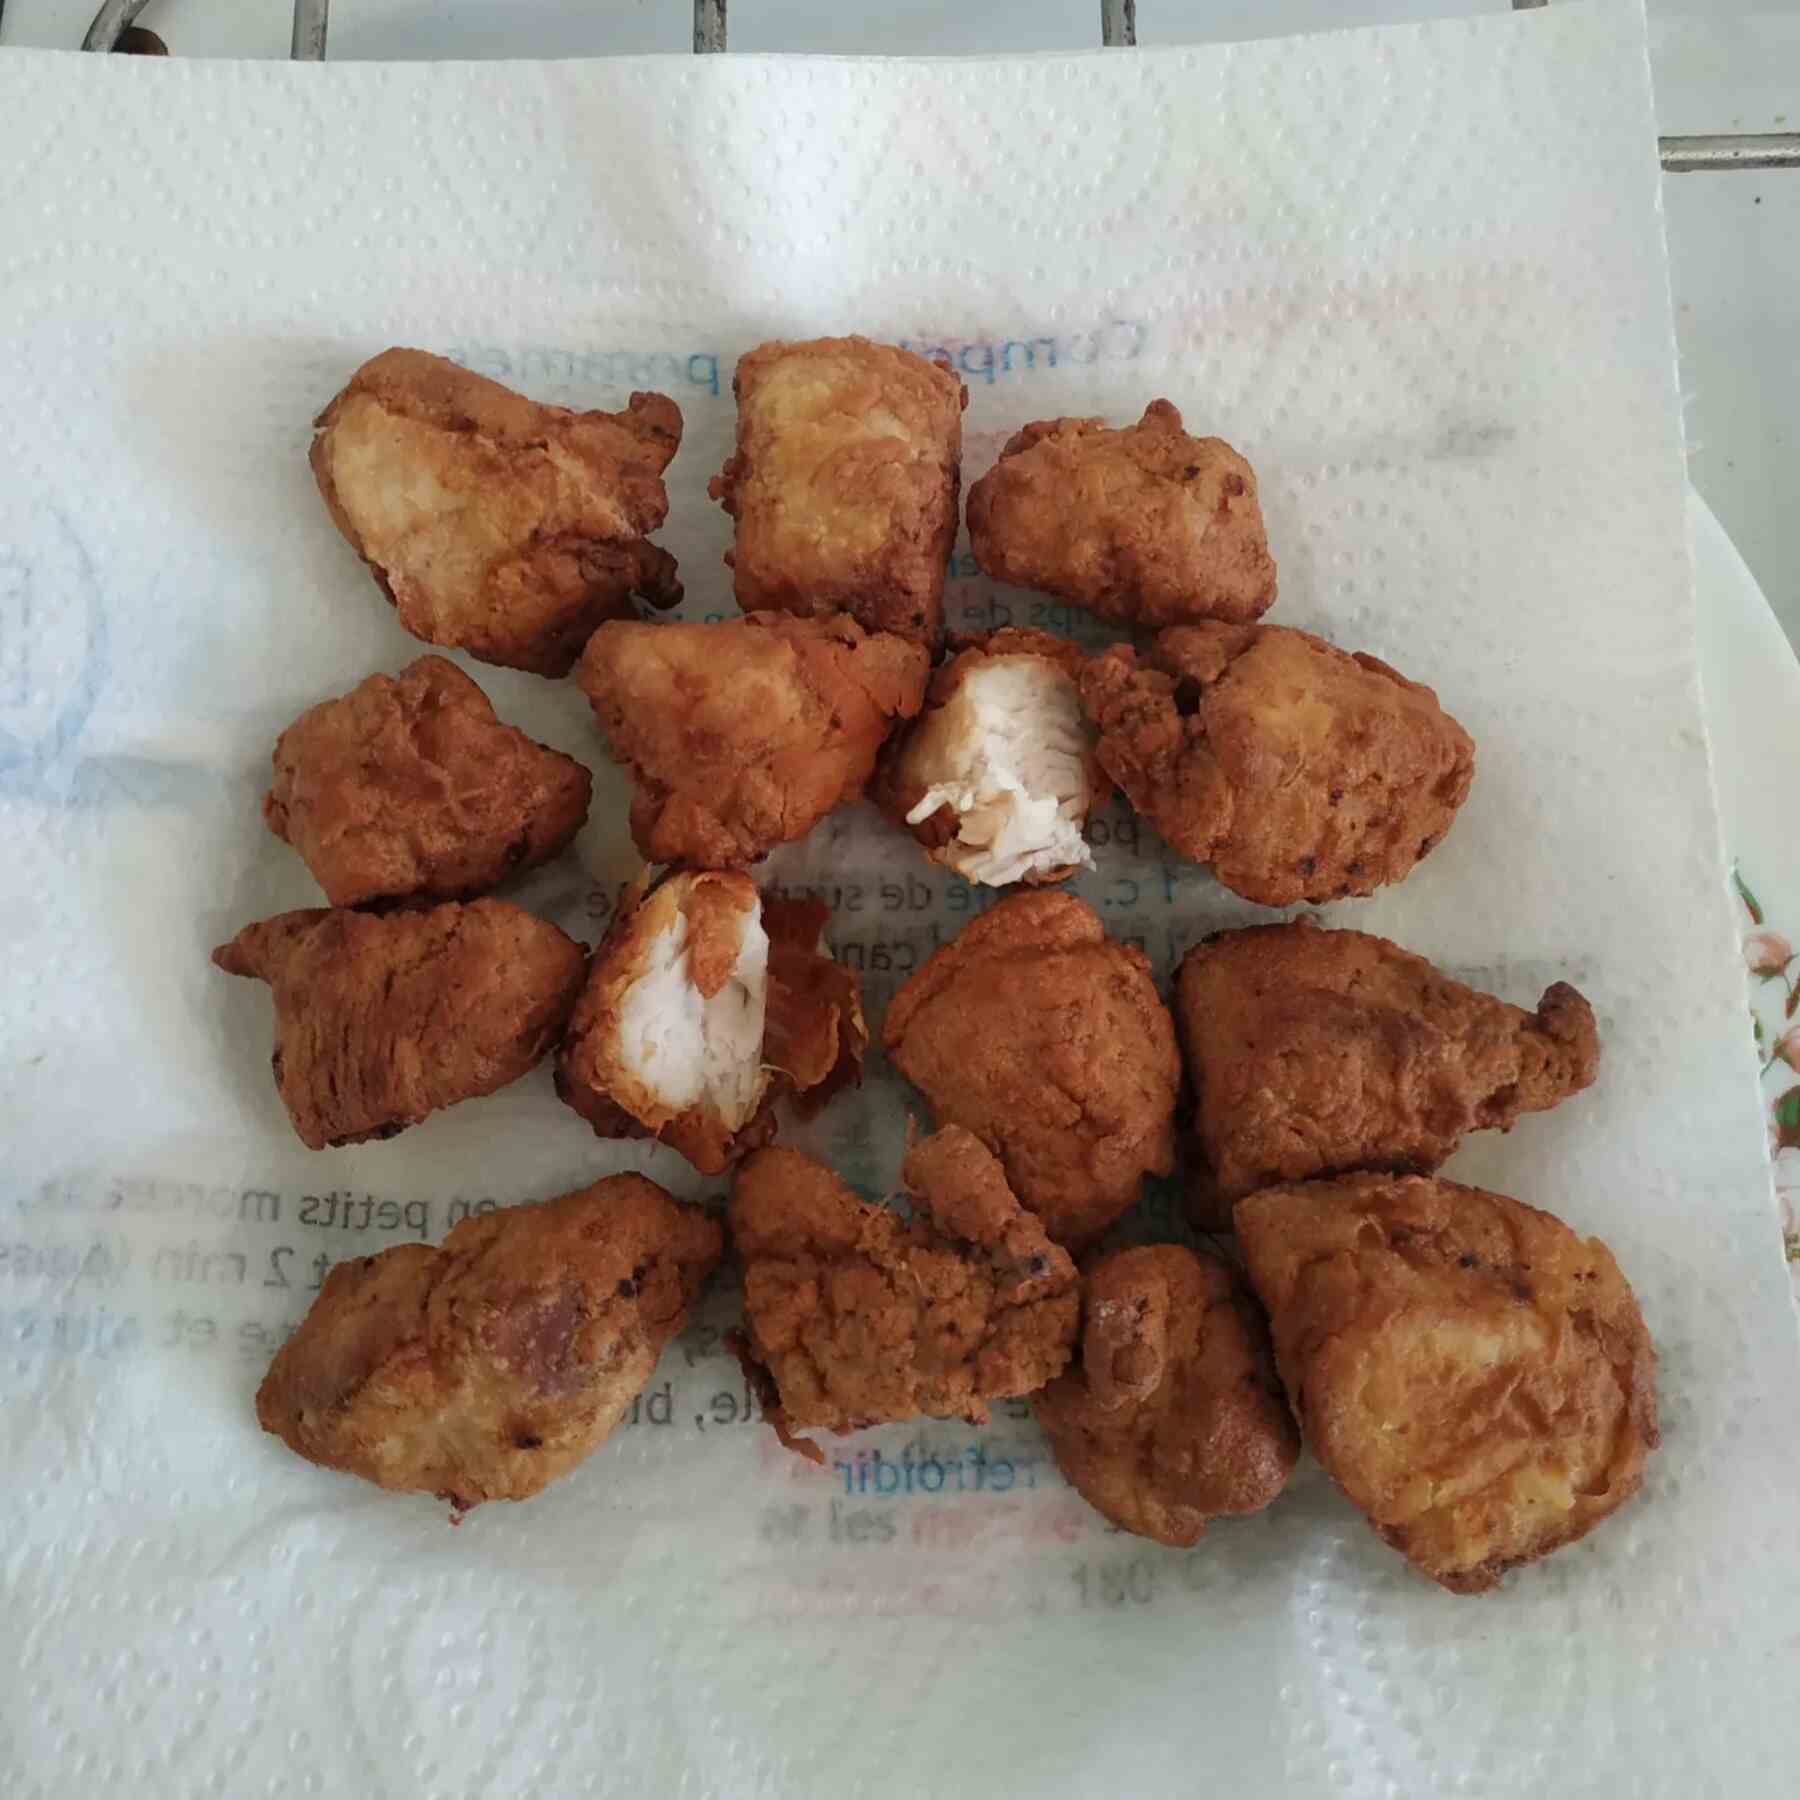 poulet frit karaage sur papier absorbant pour enlever l'huile après friture